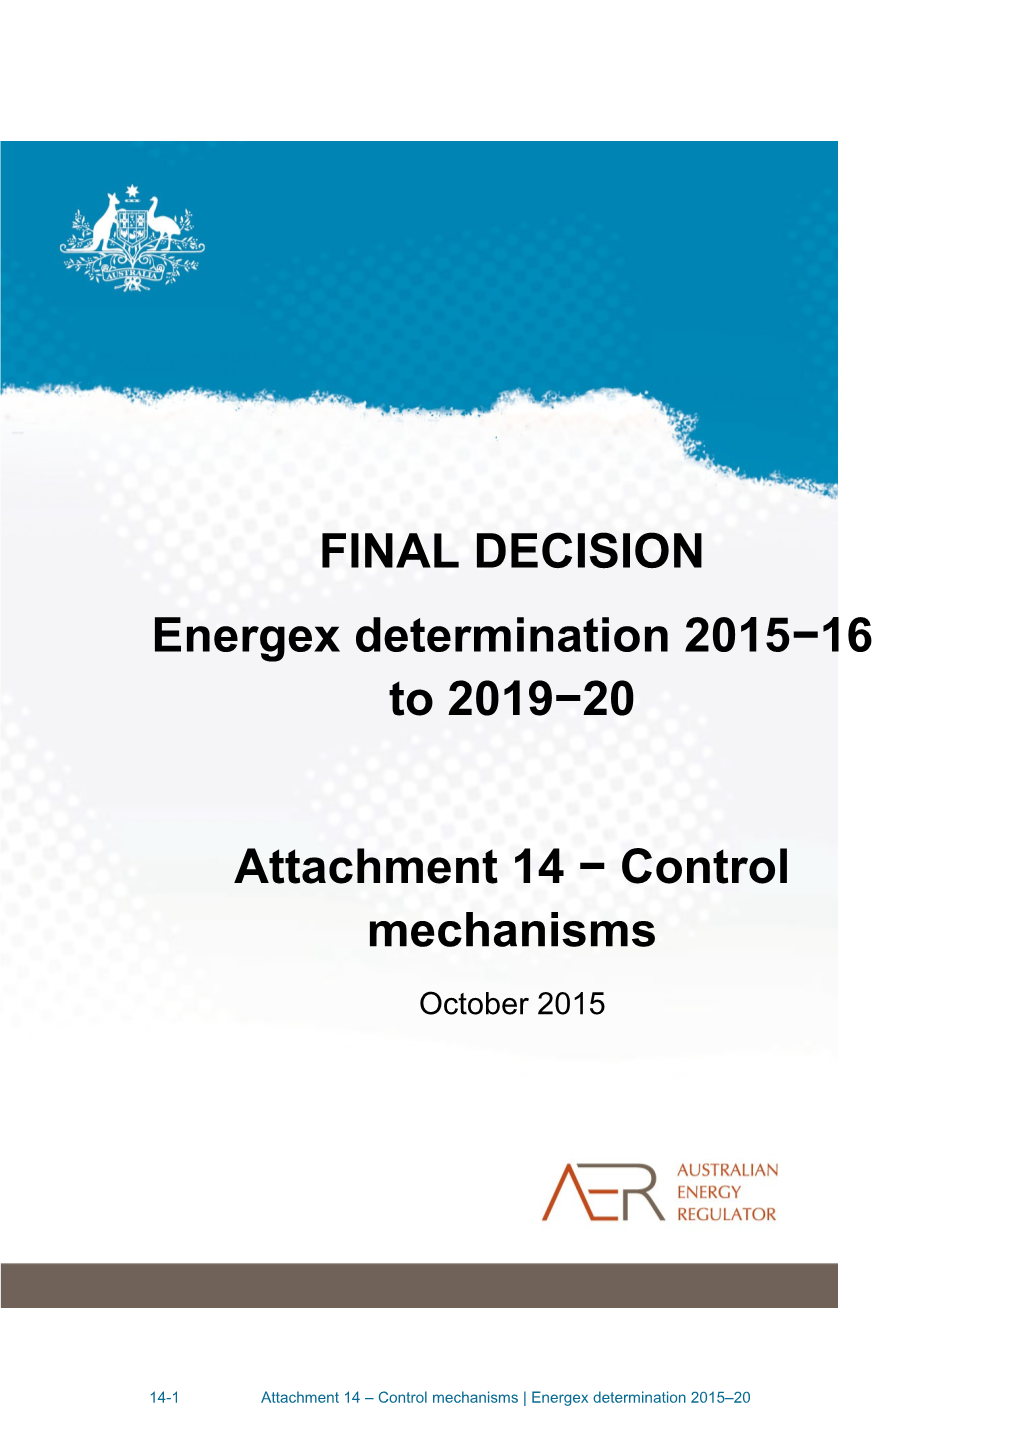 AER - Final Decision Energex Distribution Determination - Attachment 14 - Control Mechanisms